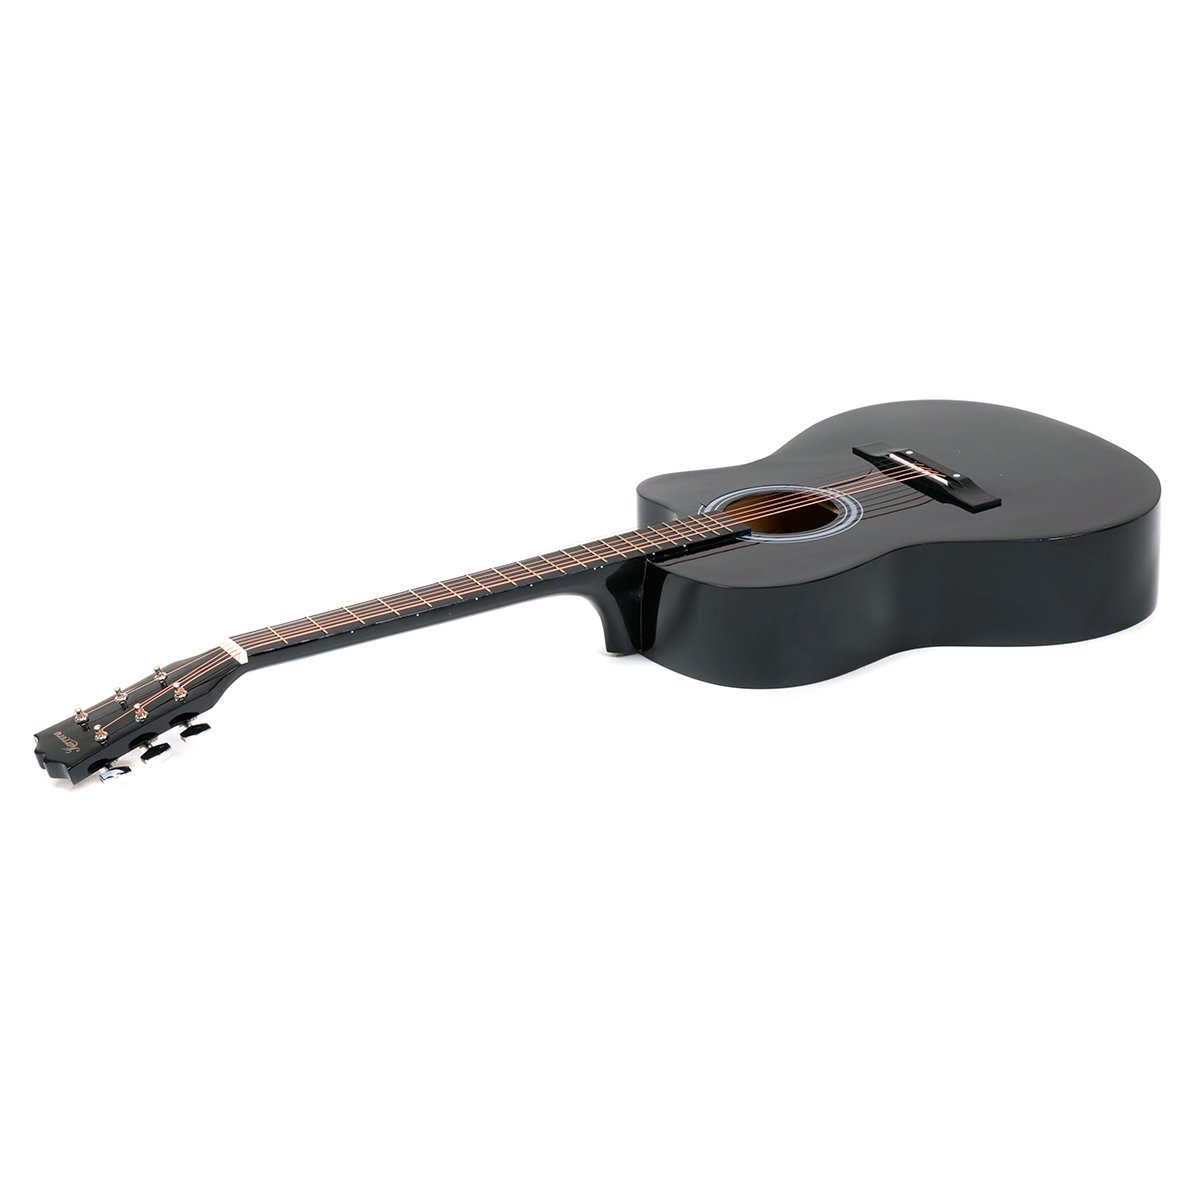 Karrera Acoustic Cutaway 40in Guitar - Black